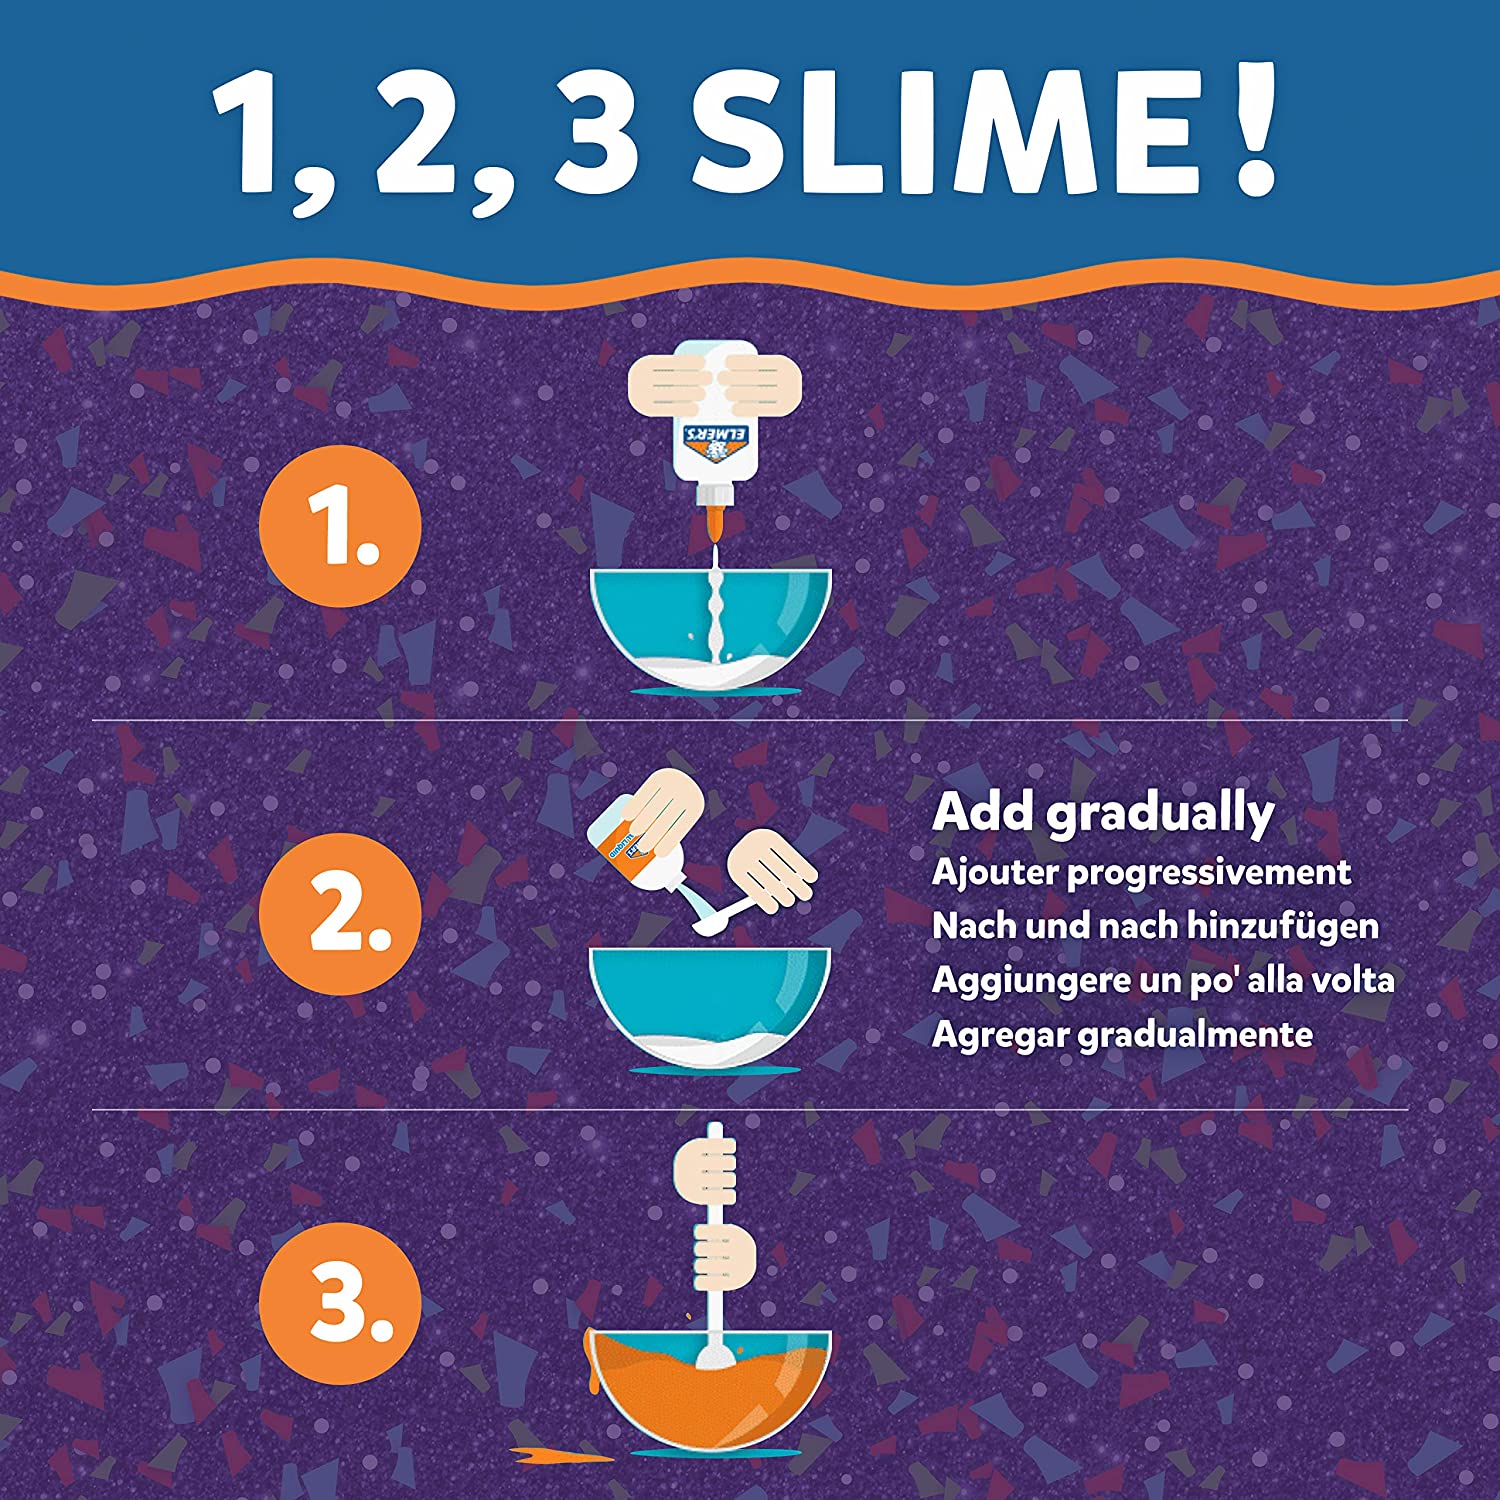 Đồ Chơi Sáng Tạo Slime Elmer's - Dung Dịch Làm Slime hoa giấy nhiều màu sắc - Không độc hại - Có thể rửa sạch 259ml